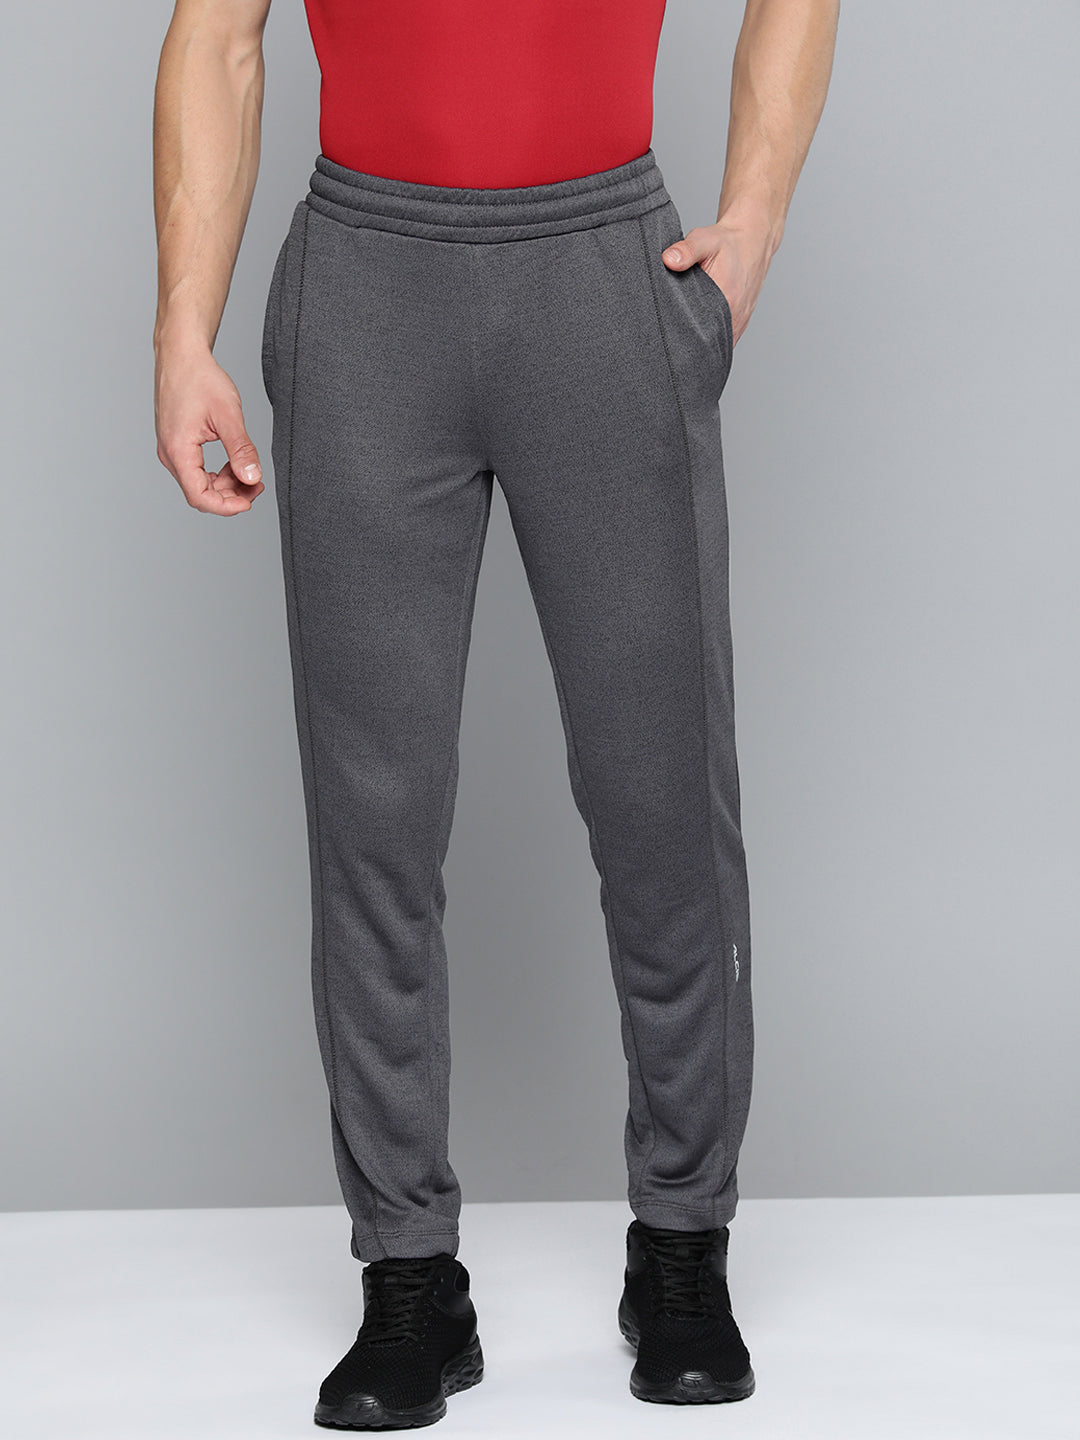 Alcis Men Charcoal Grey Solid Track Pants